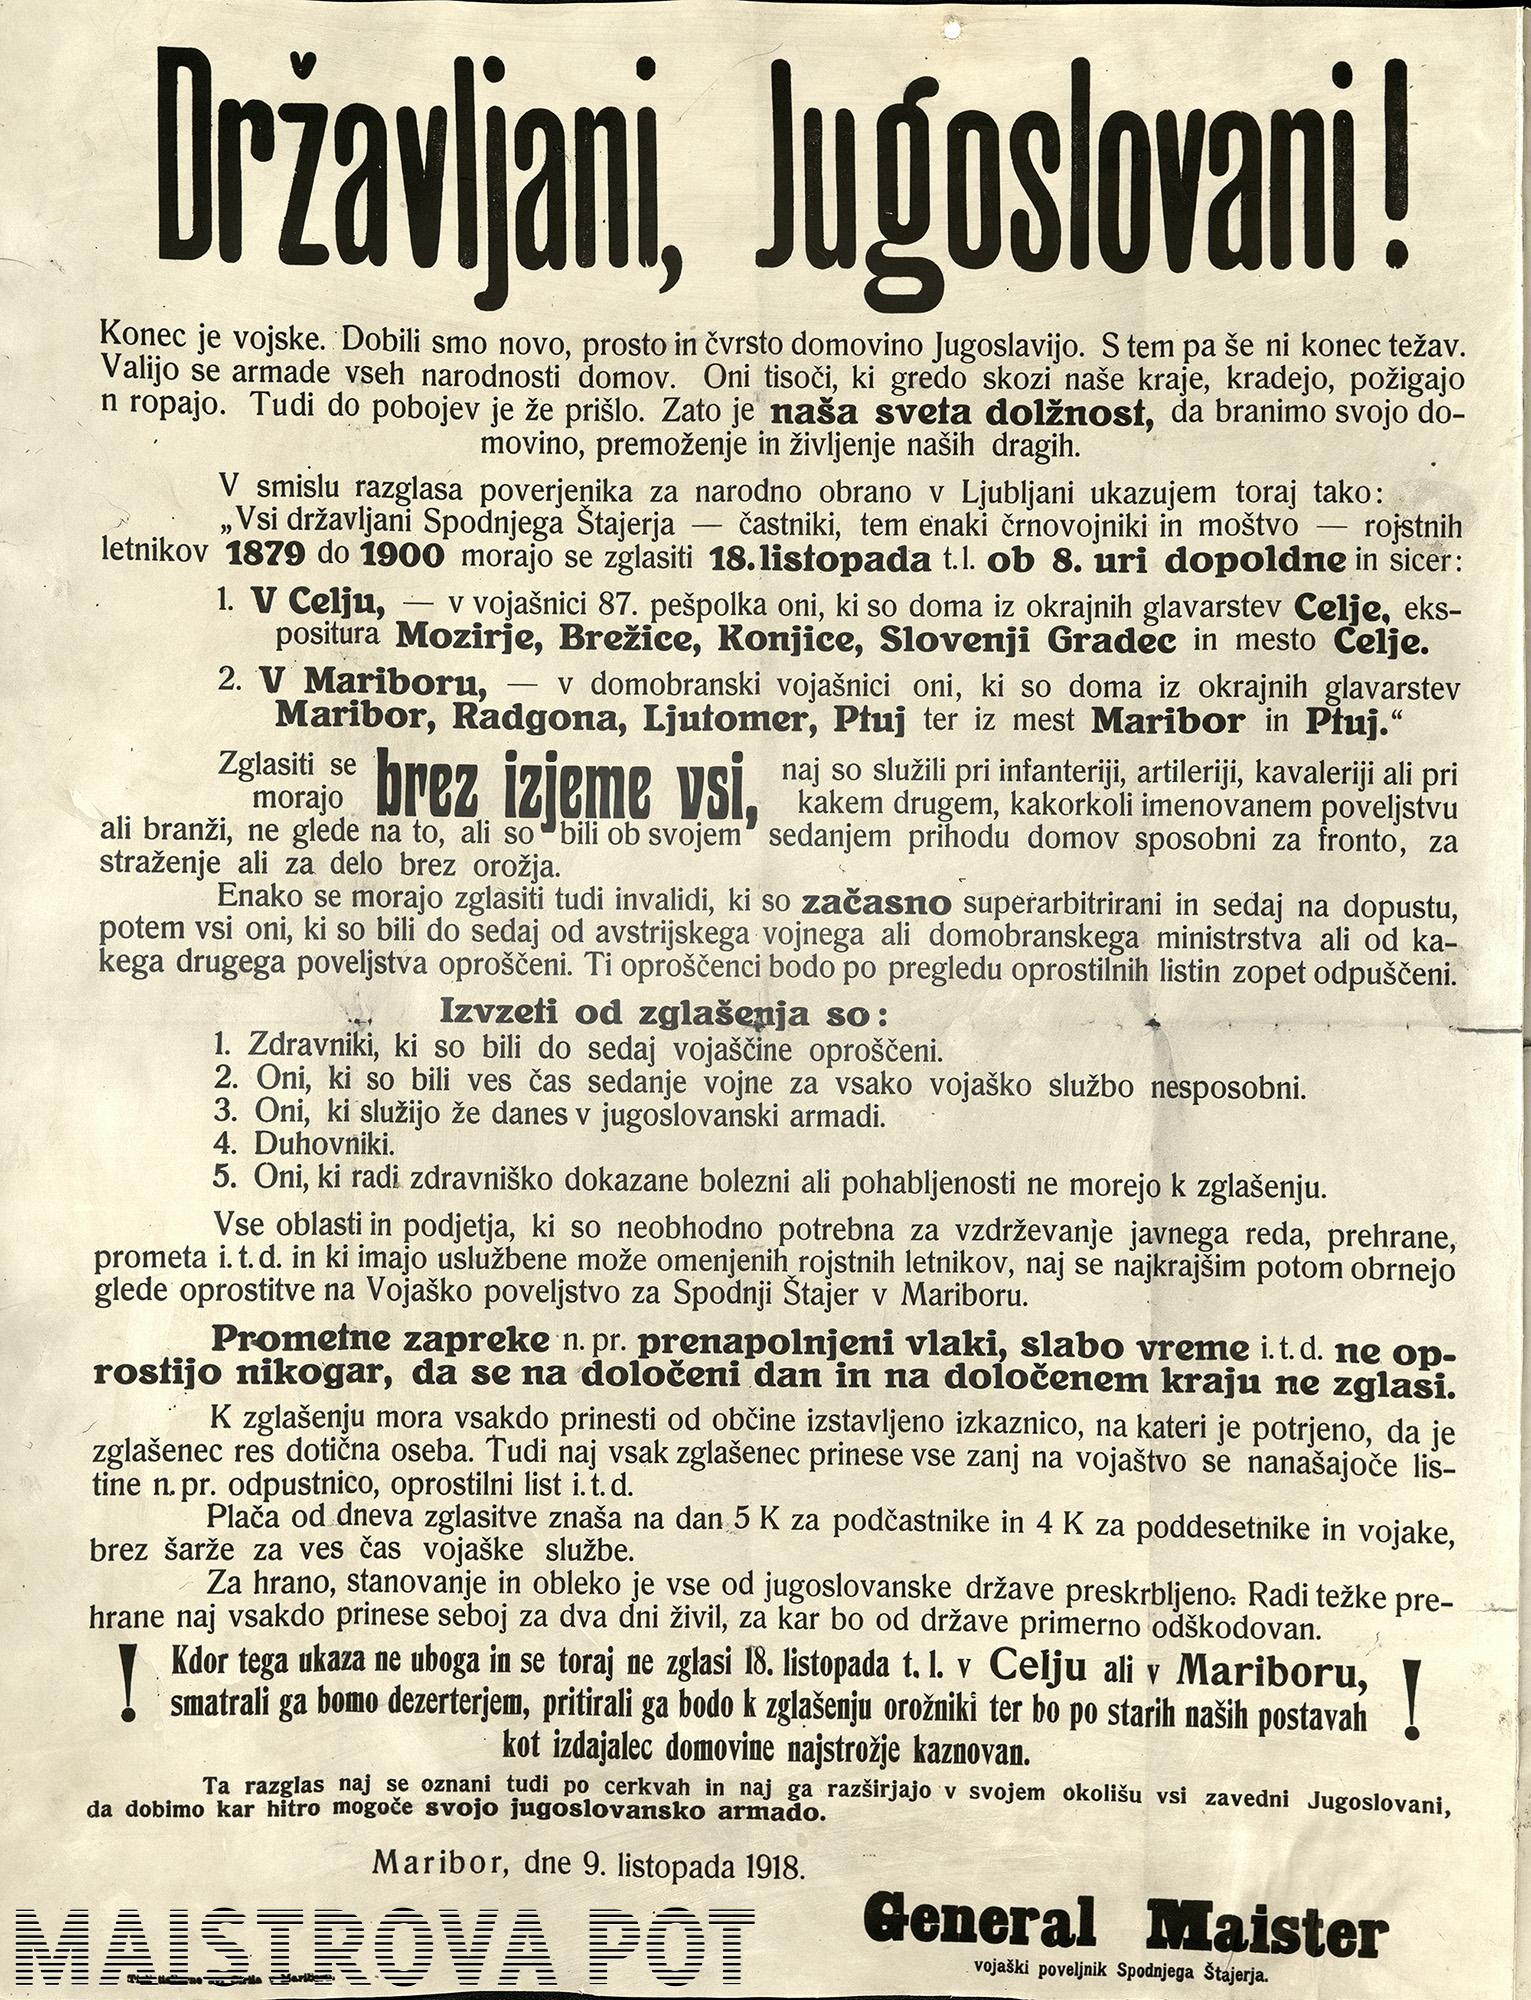 Mobilizacijski razglas v nemščini 1918